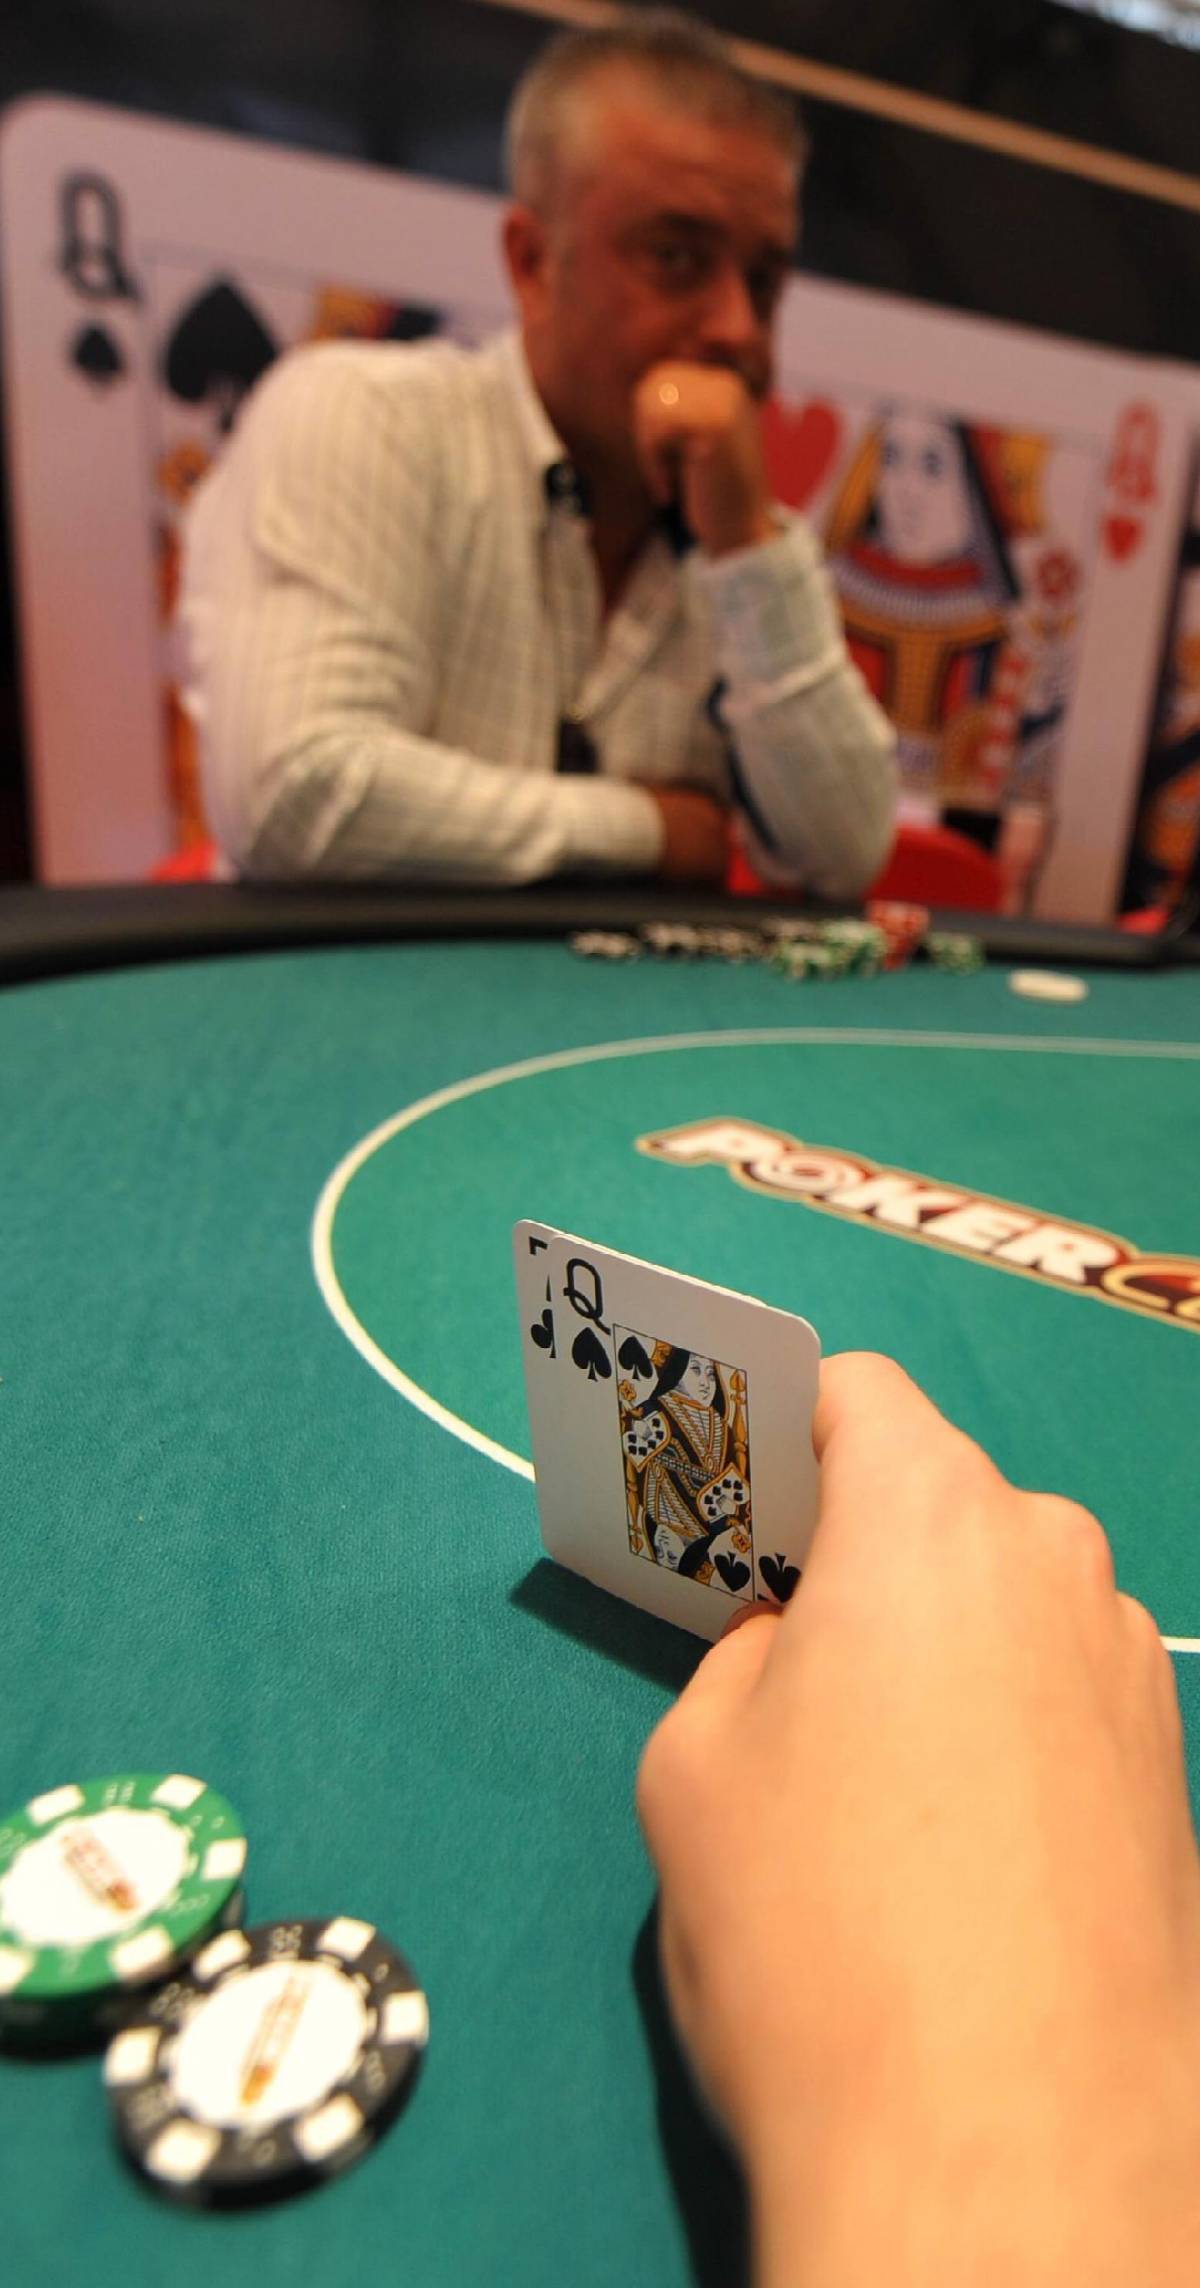 Il mago del poker on line vince (ed evade) 6 milioni